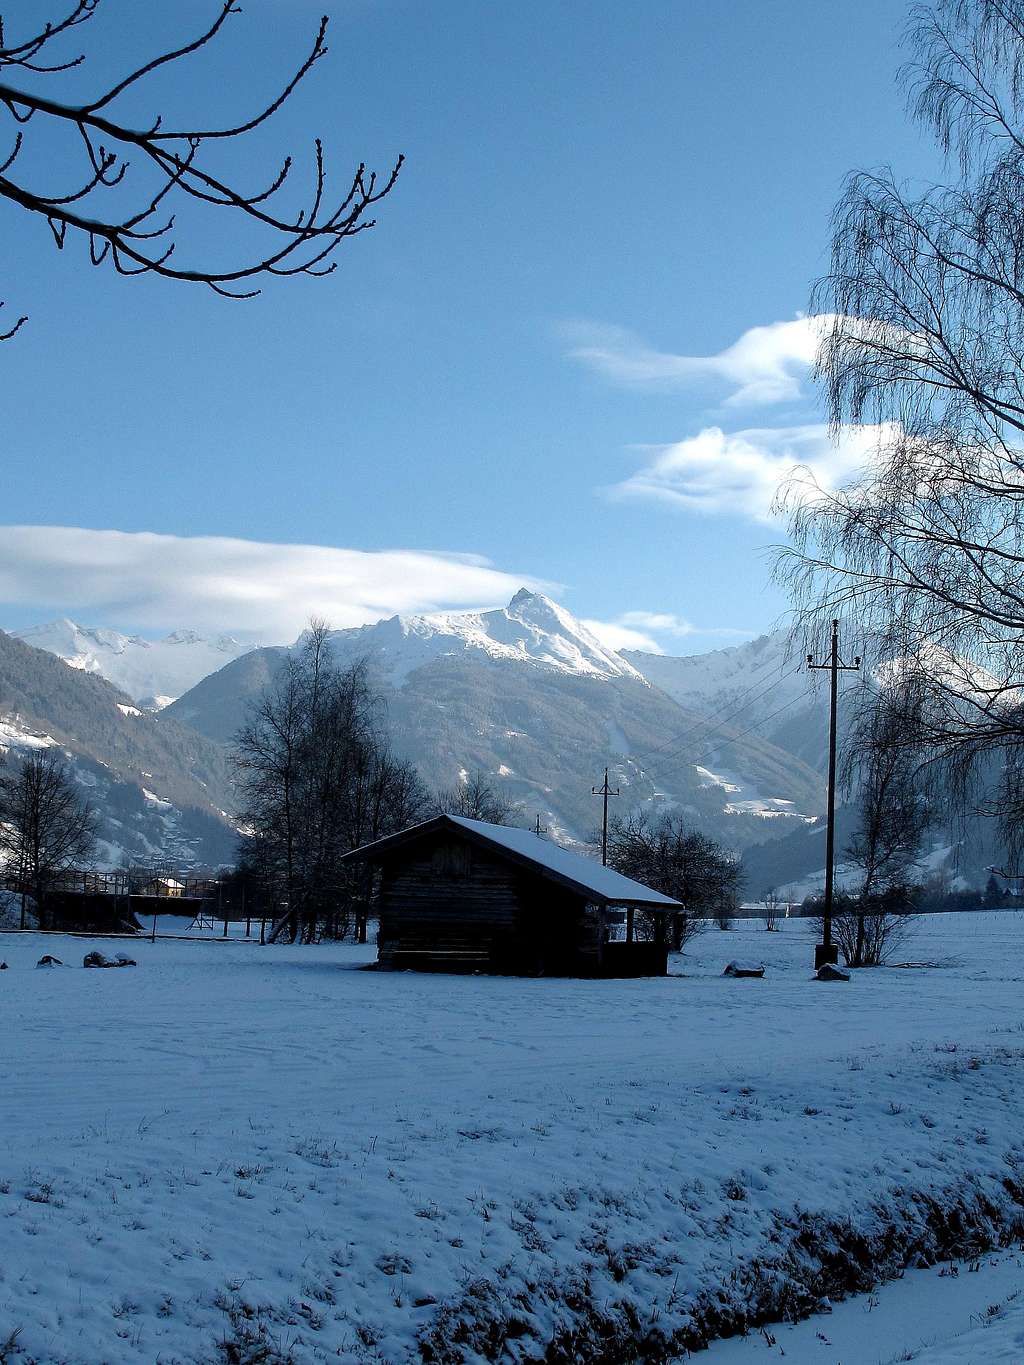 The Graukogel as seen in December from Bad Hofgastein